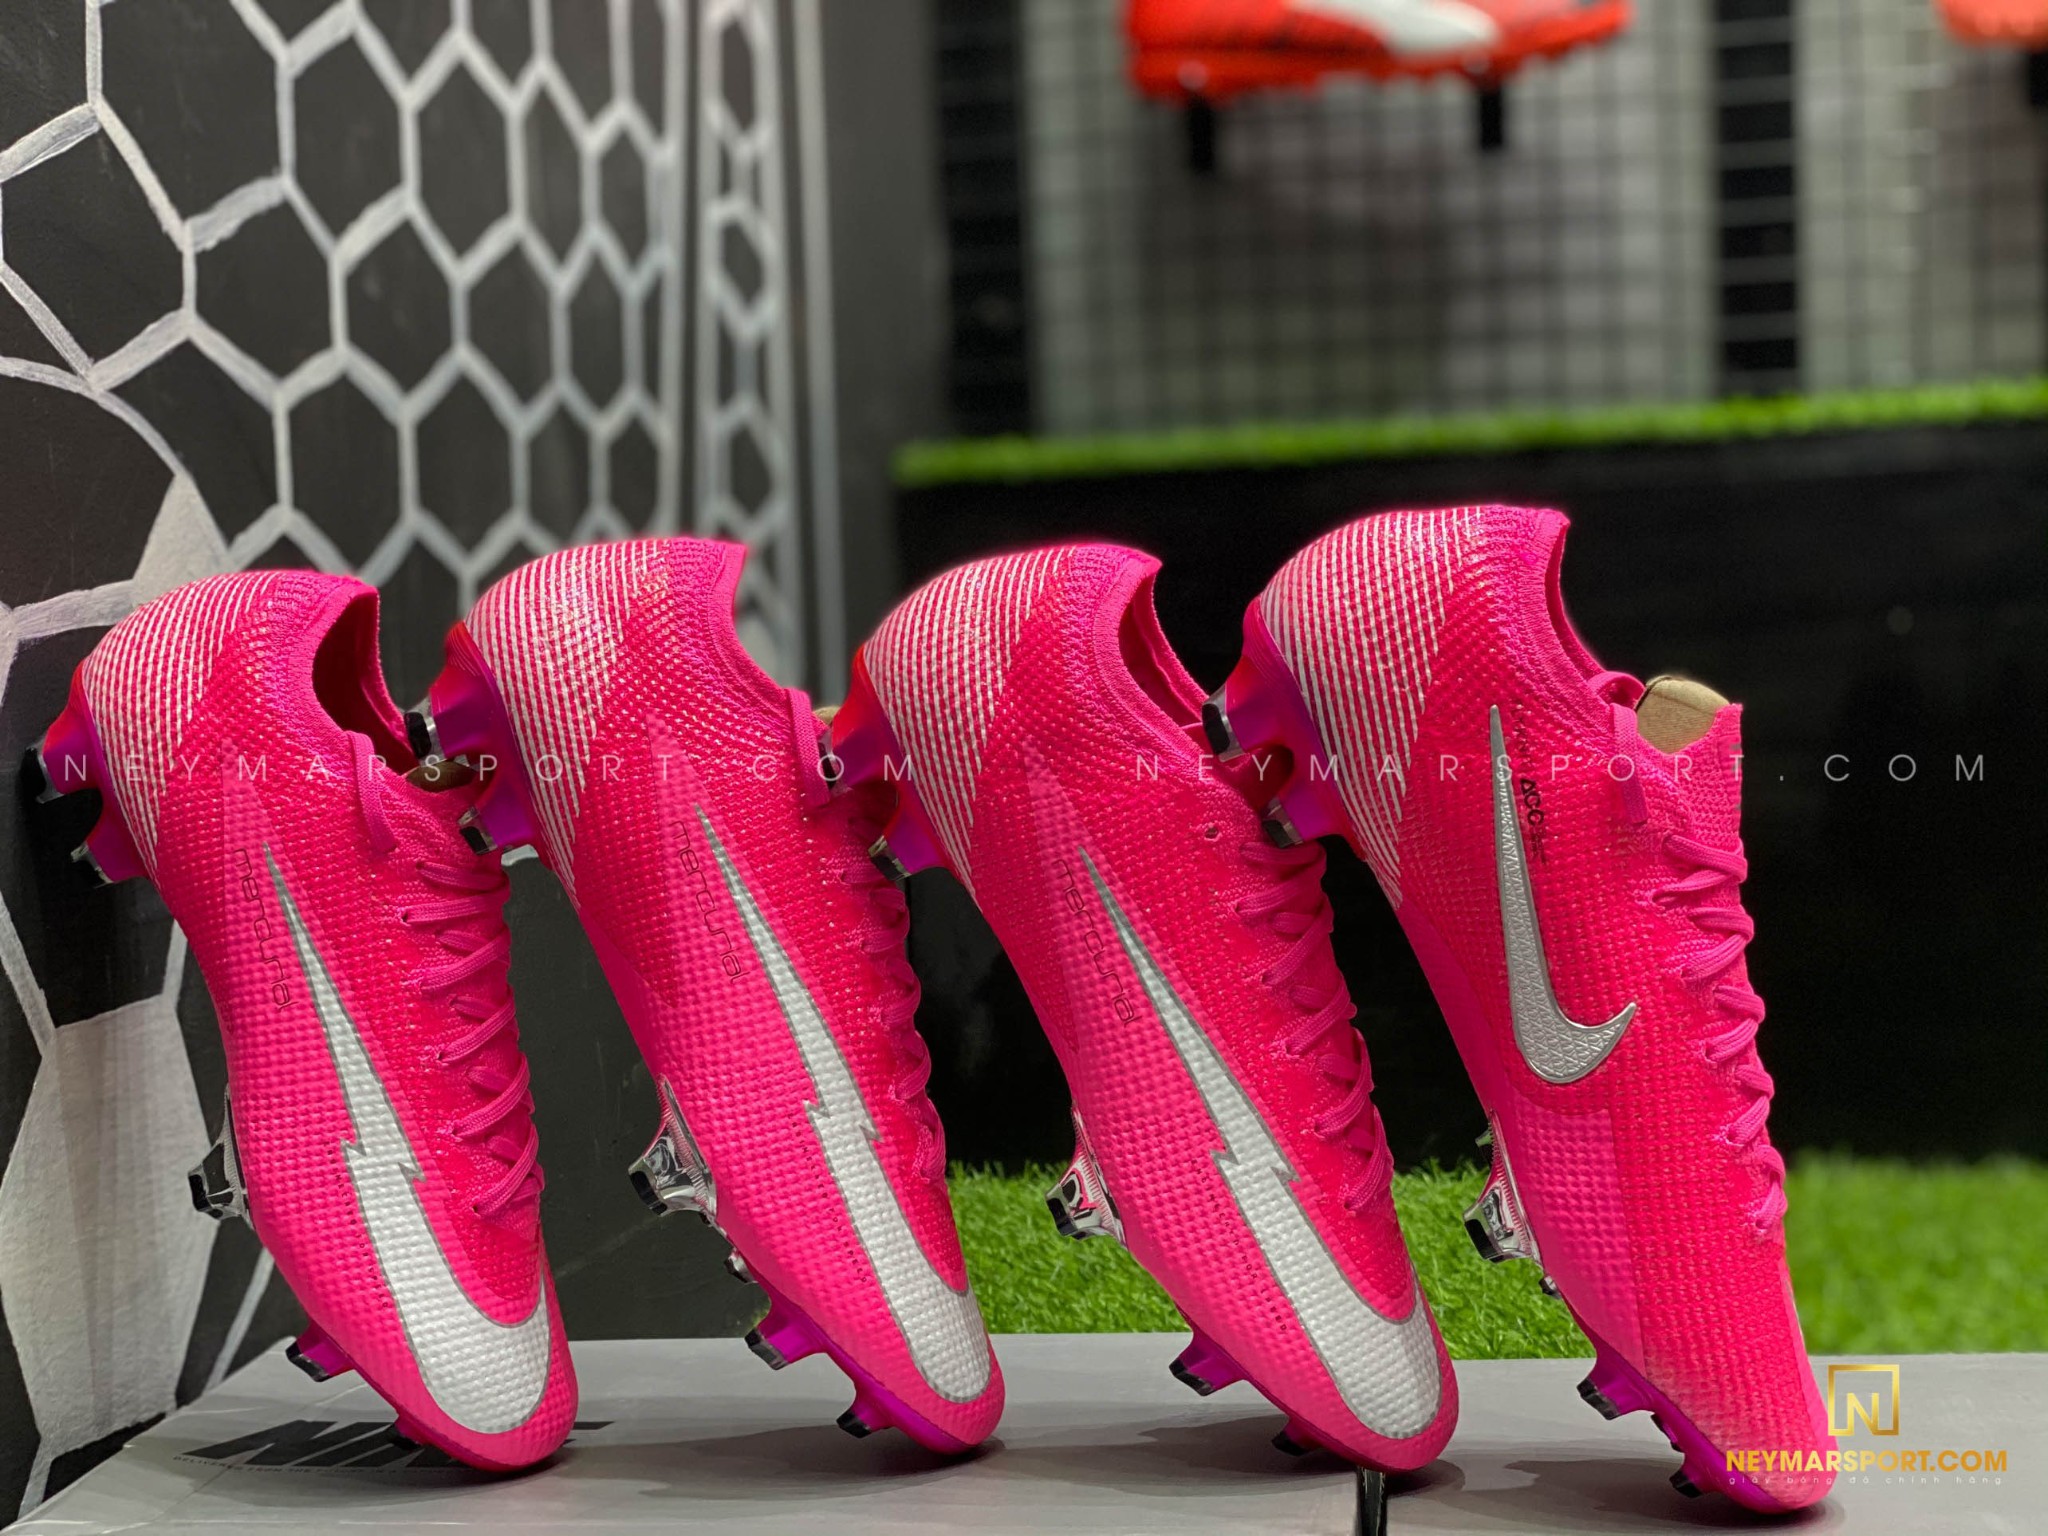 Giày đá bóng Nike Mercurial Mbappé Rosa phiên bản mới nhất với màu hồng ấn tượng